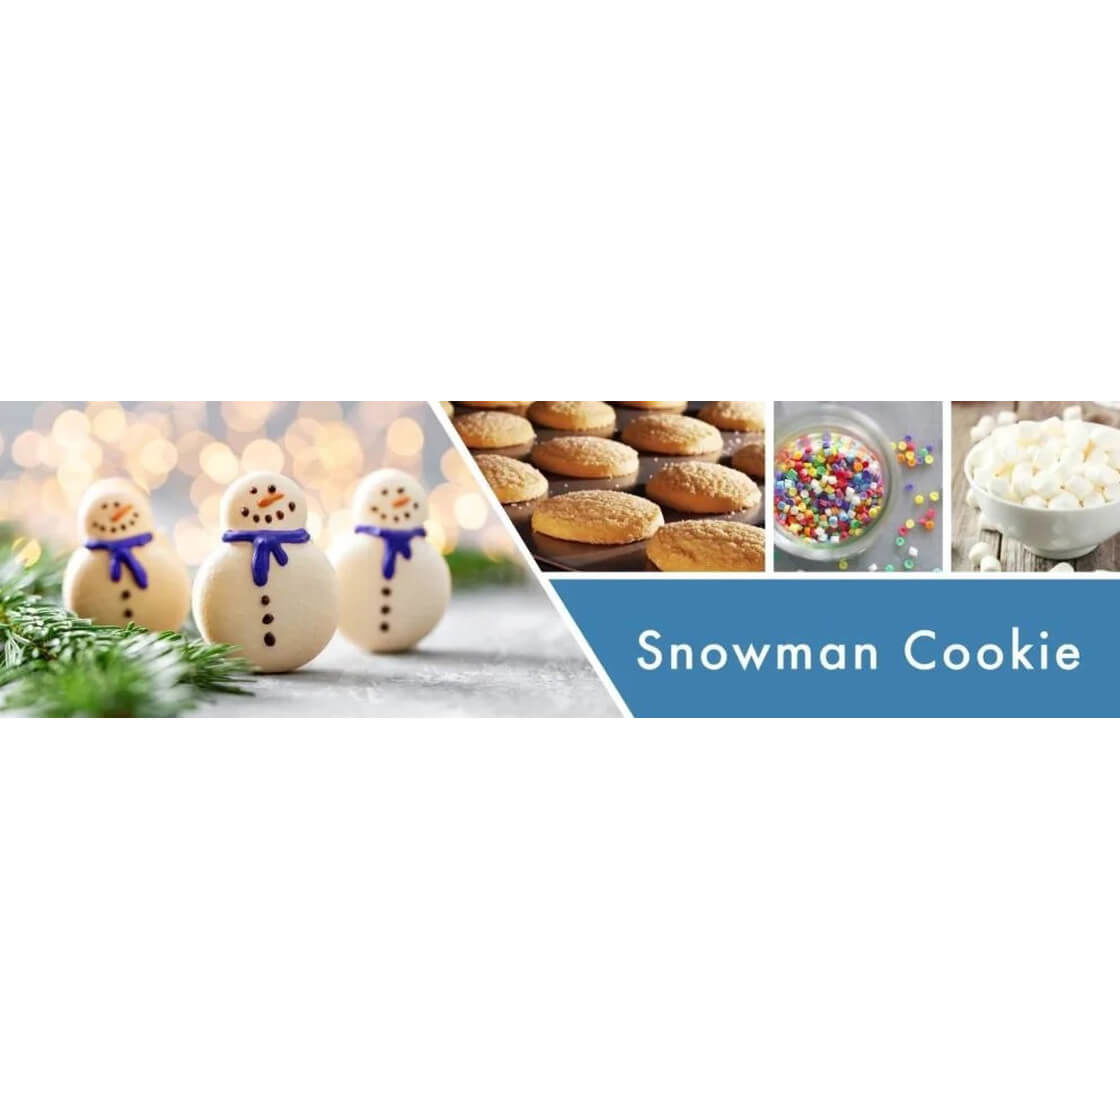 Snowman Cookie 59g